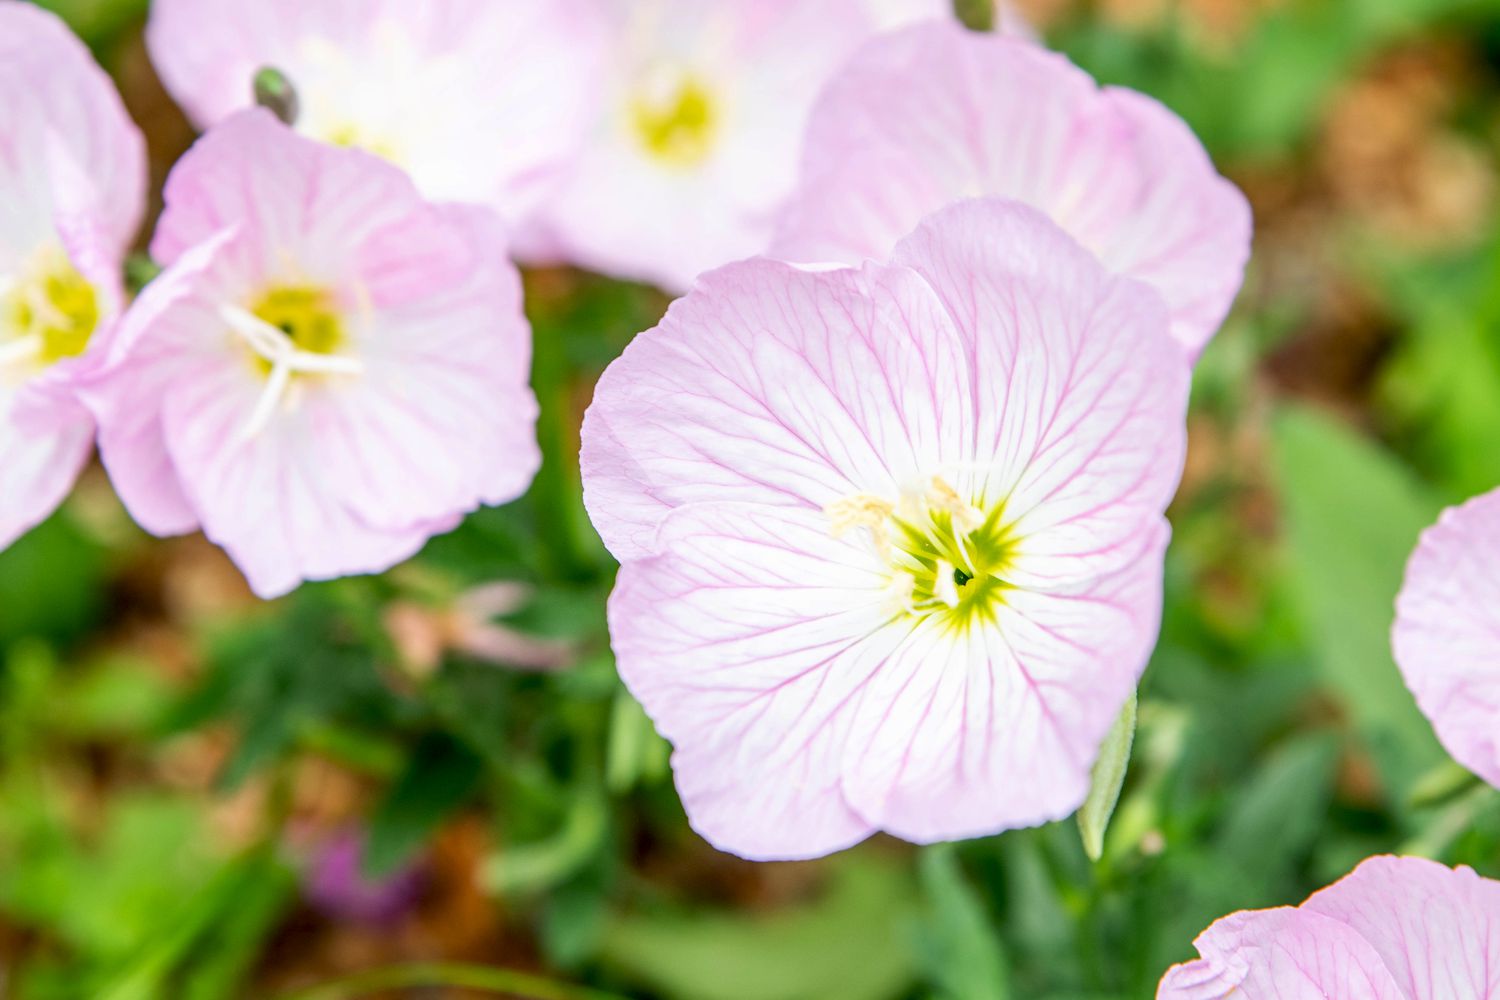 Primer plano de flores de onagra rosa con pétalos superpuestos de color rosa pálido y blanco y centros de color amarillo verdoso